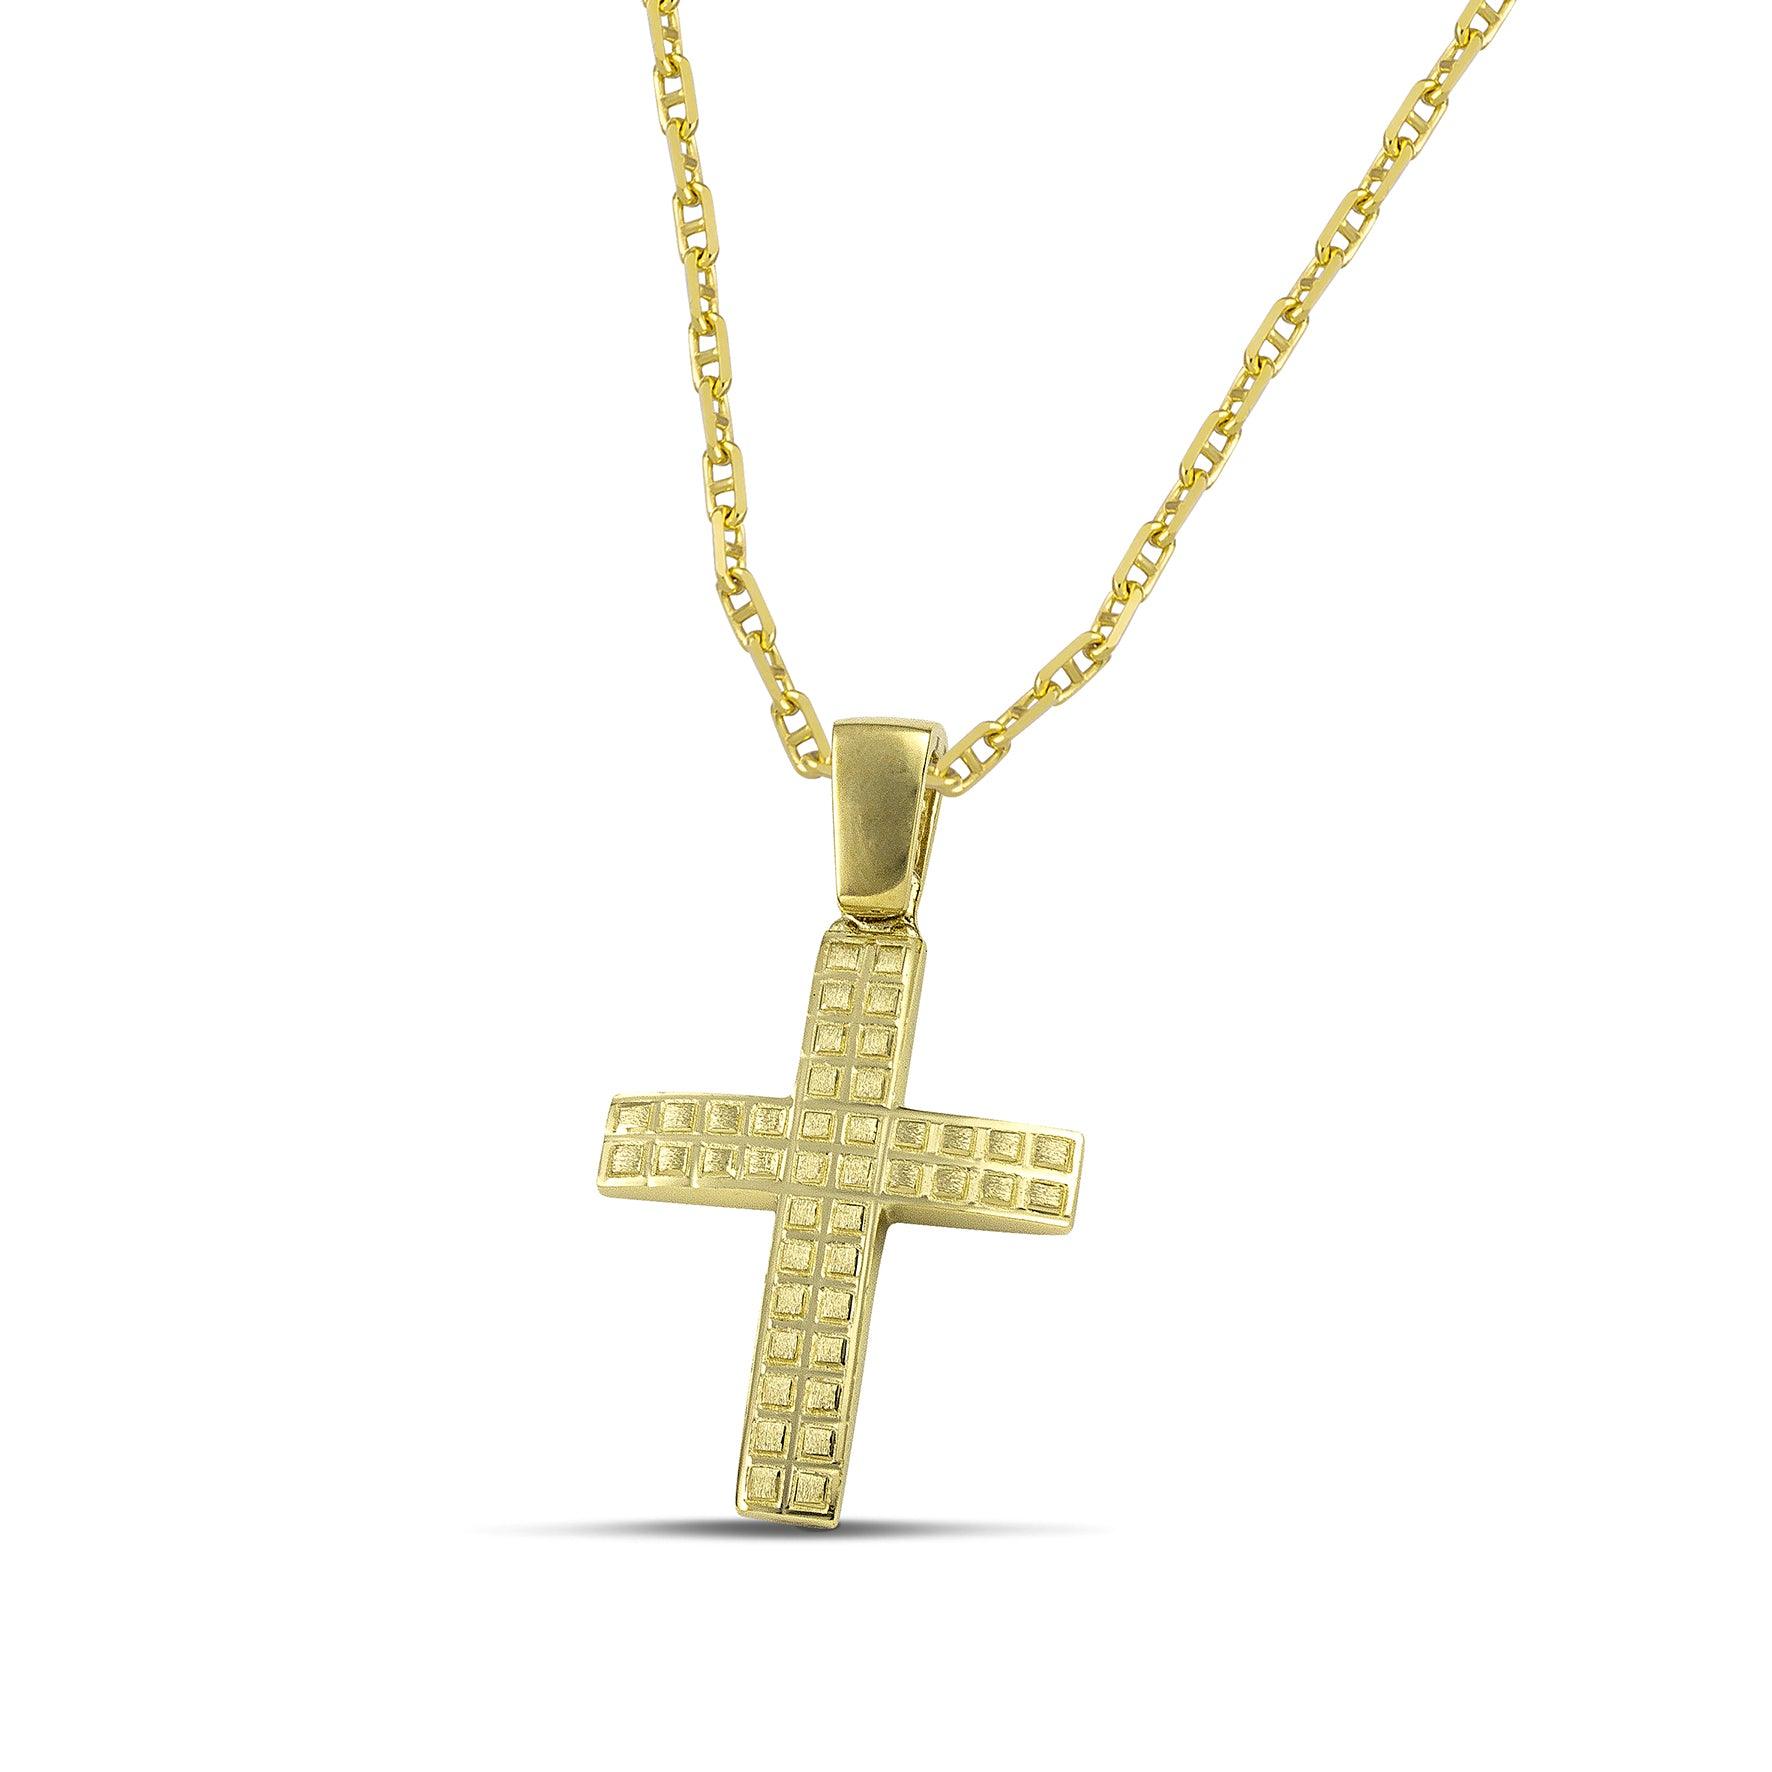 Ανδρικός χρυσός σταυρός βάπτισης με τετράγωνα σχέδια, σε "Θ" αλυσίδα.